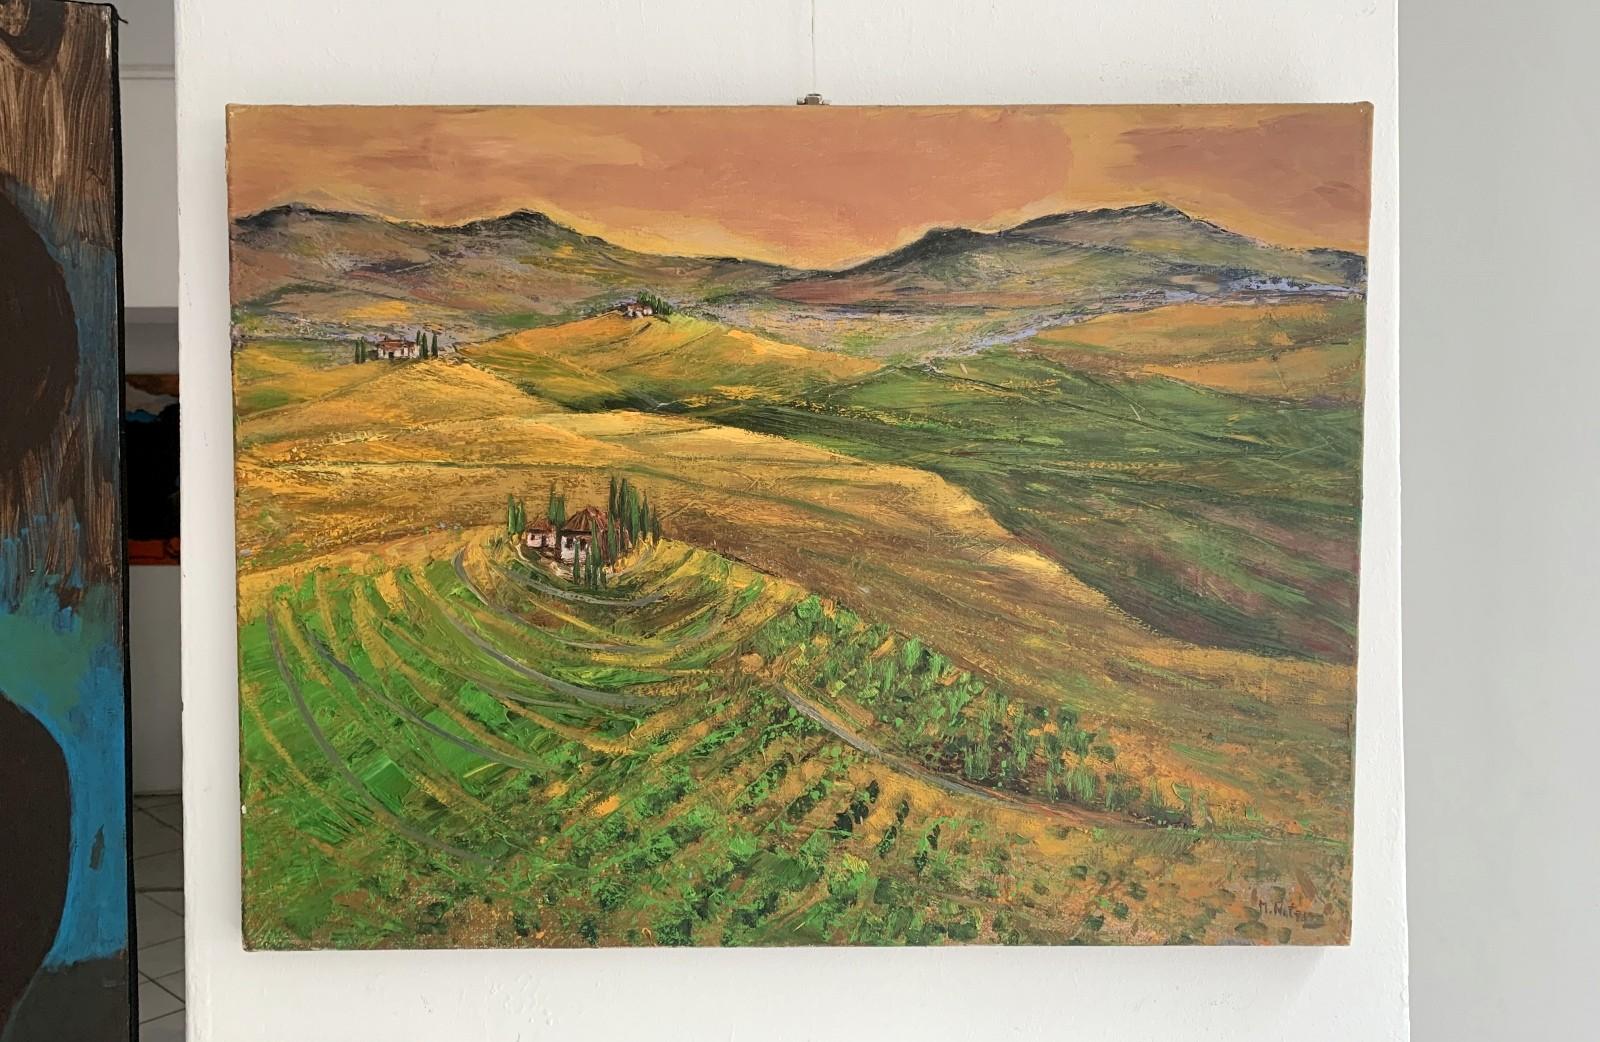 Provance 10 - 21st century, Colourful Landscape, Polish artist - Painting by Magdalena Nałęcz